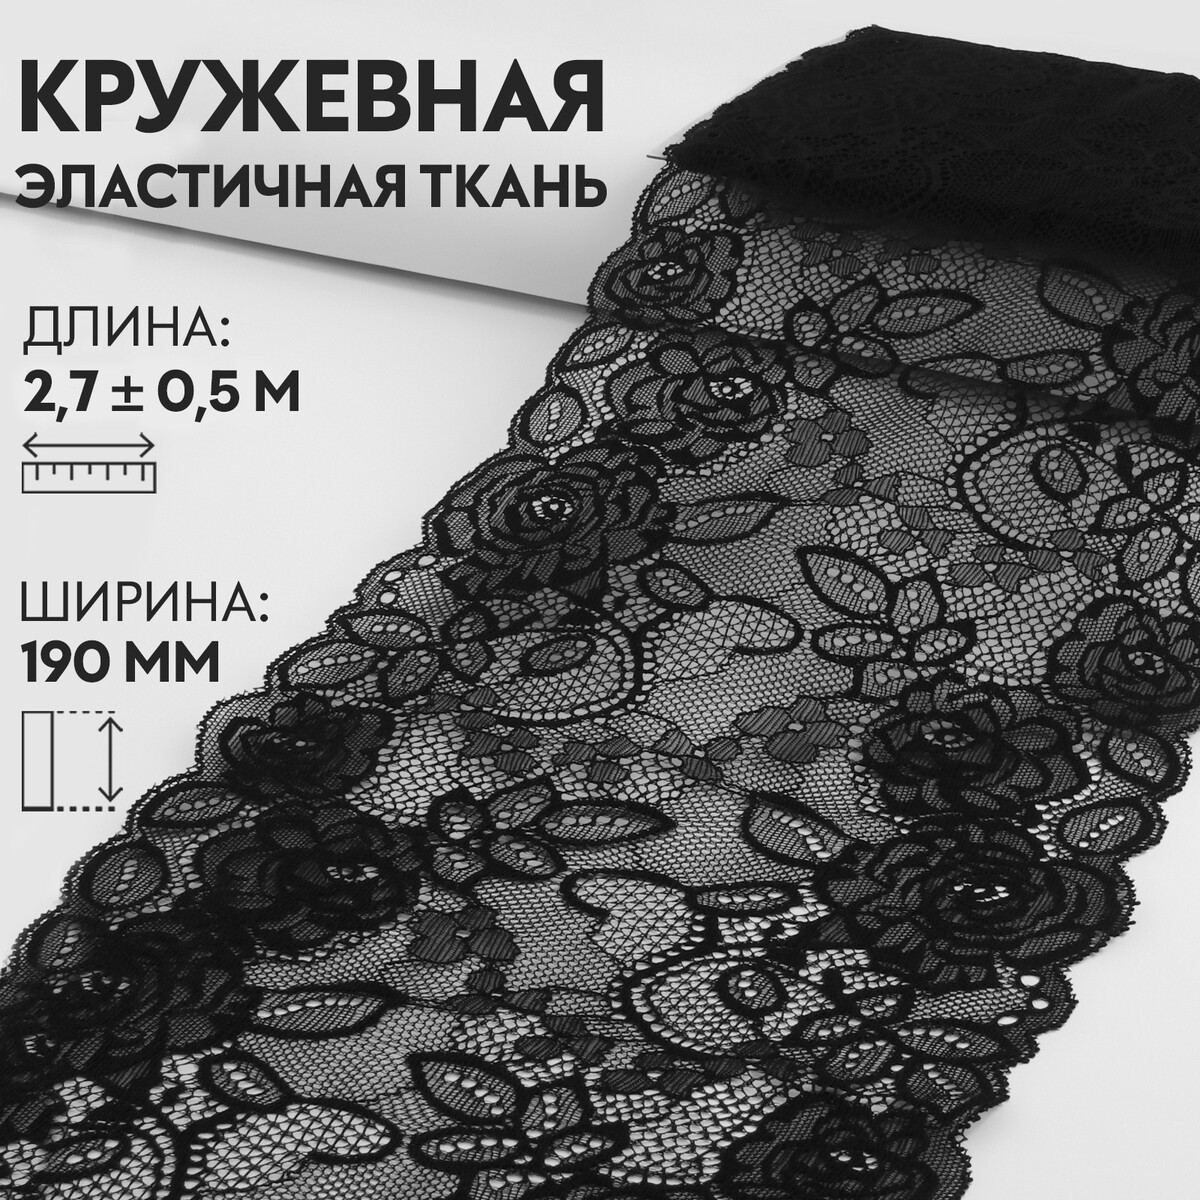 Кружевная эластичная ткань, 190 мм × 2,7 ± 0,5 м, цвет черный